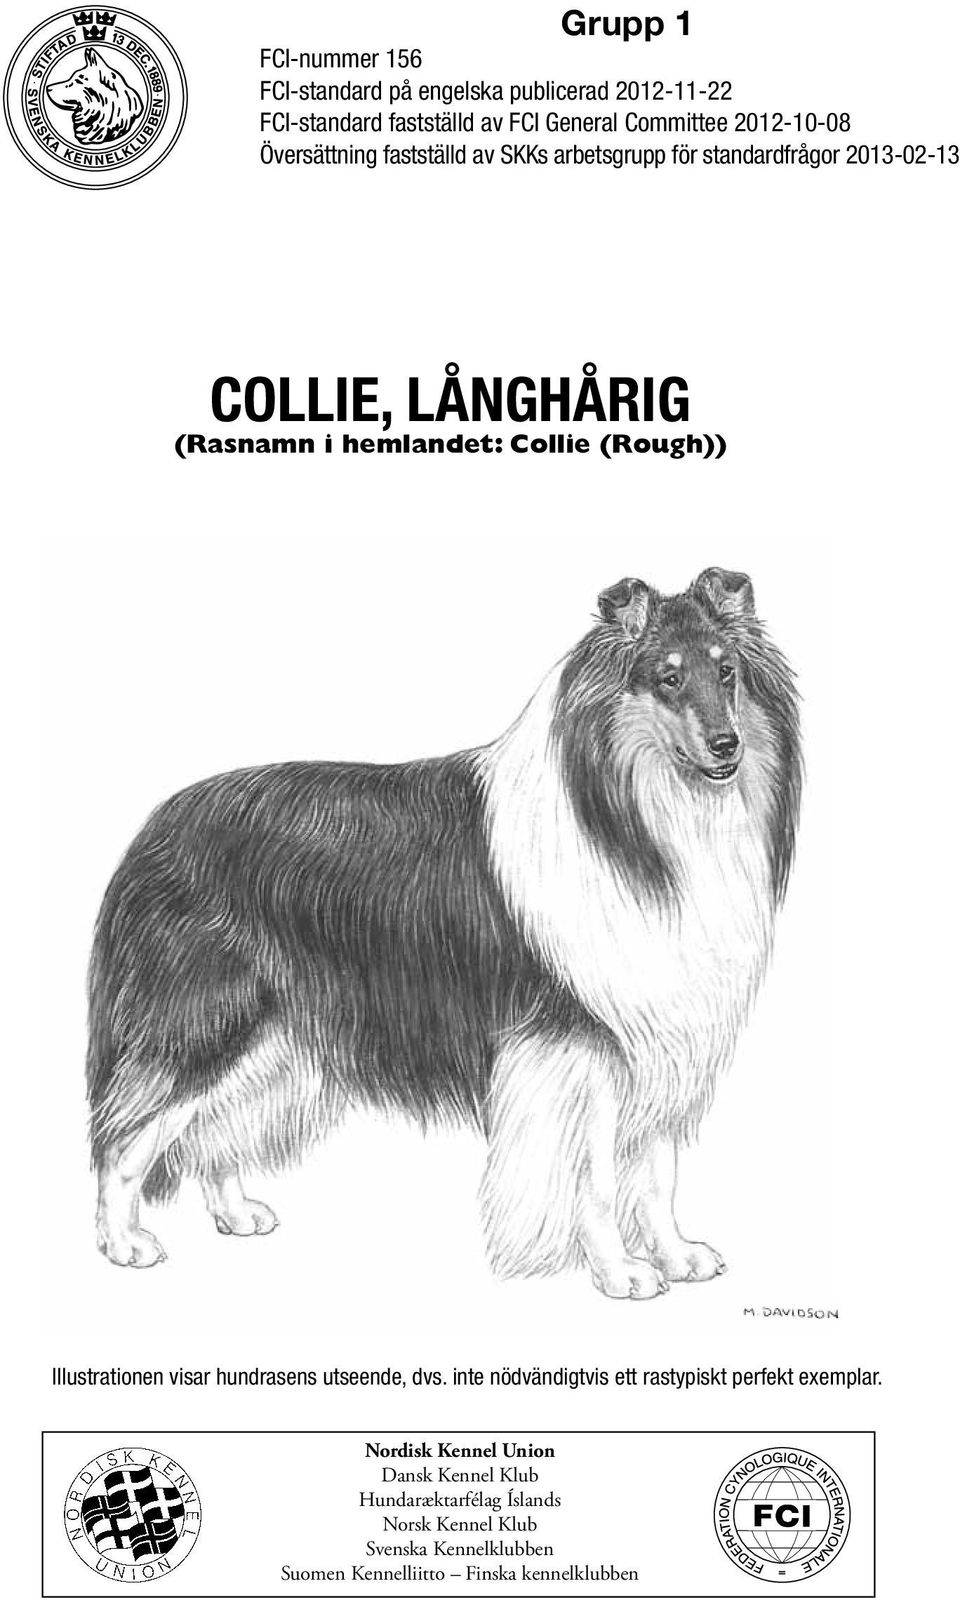 Collie (Rough)) Illustrationen visar hundrasens utseende, dvs. inte nödvändigtvis ett rastypiskt perfekt exemplar.